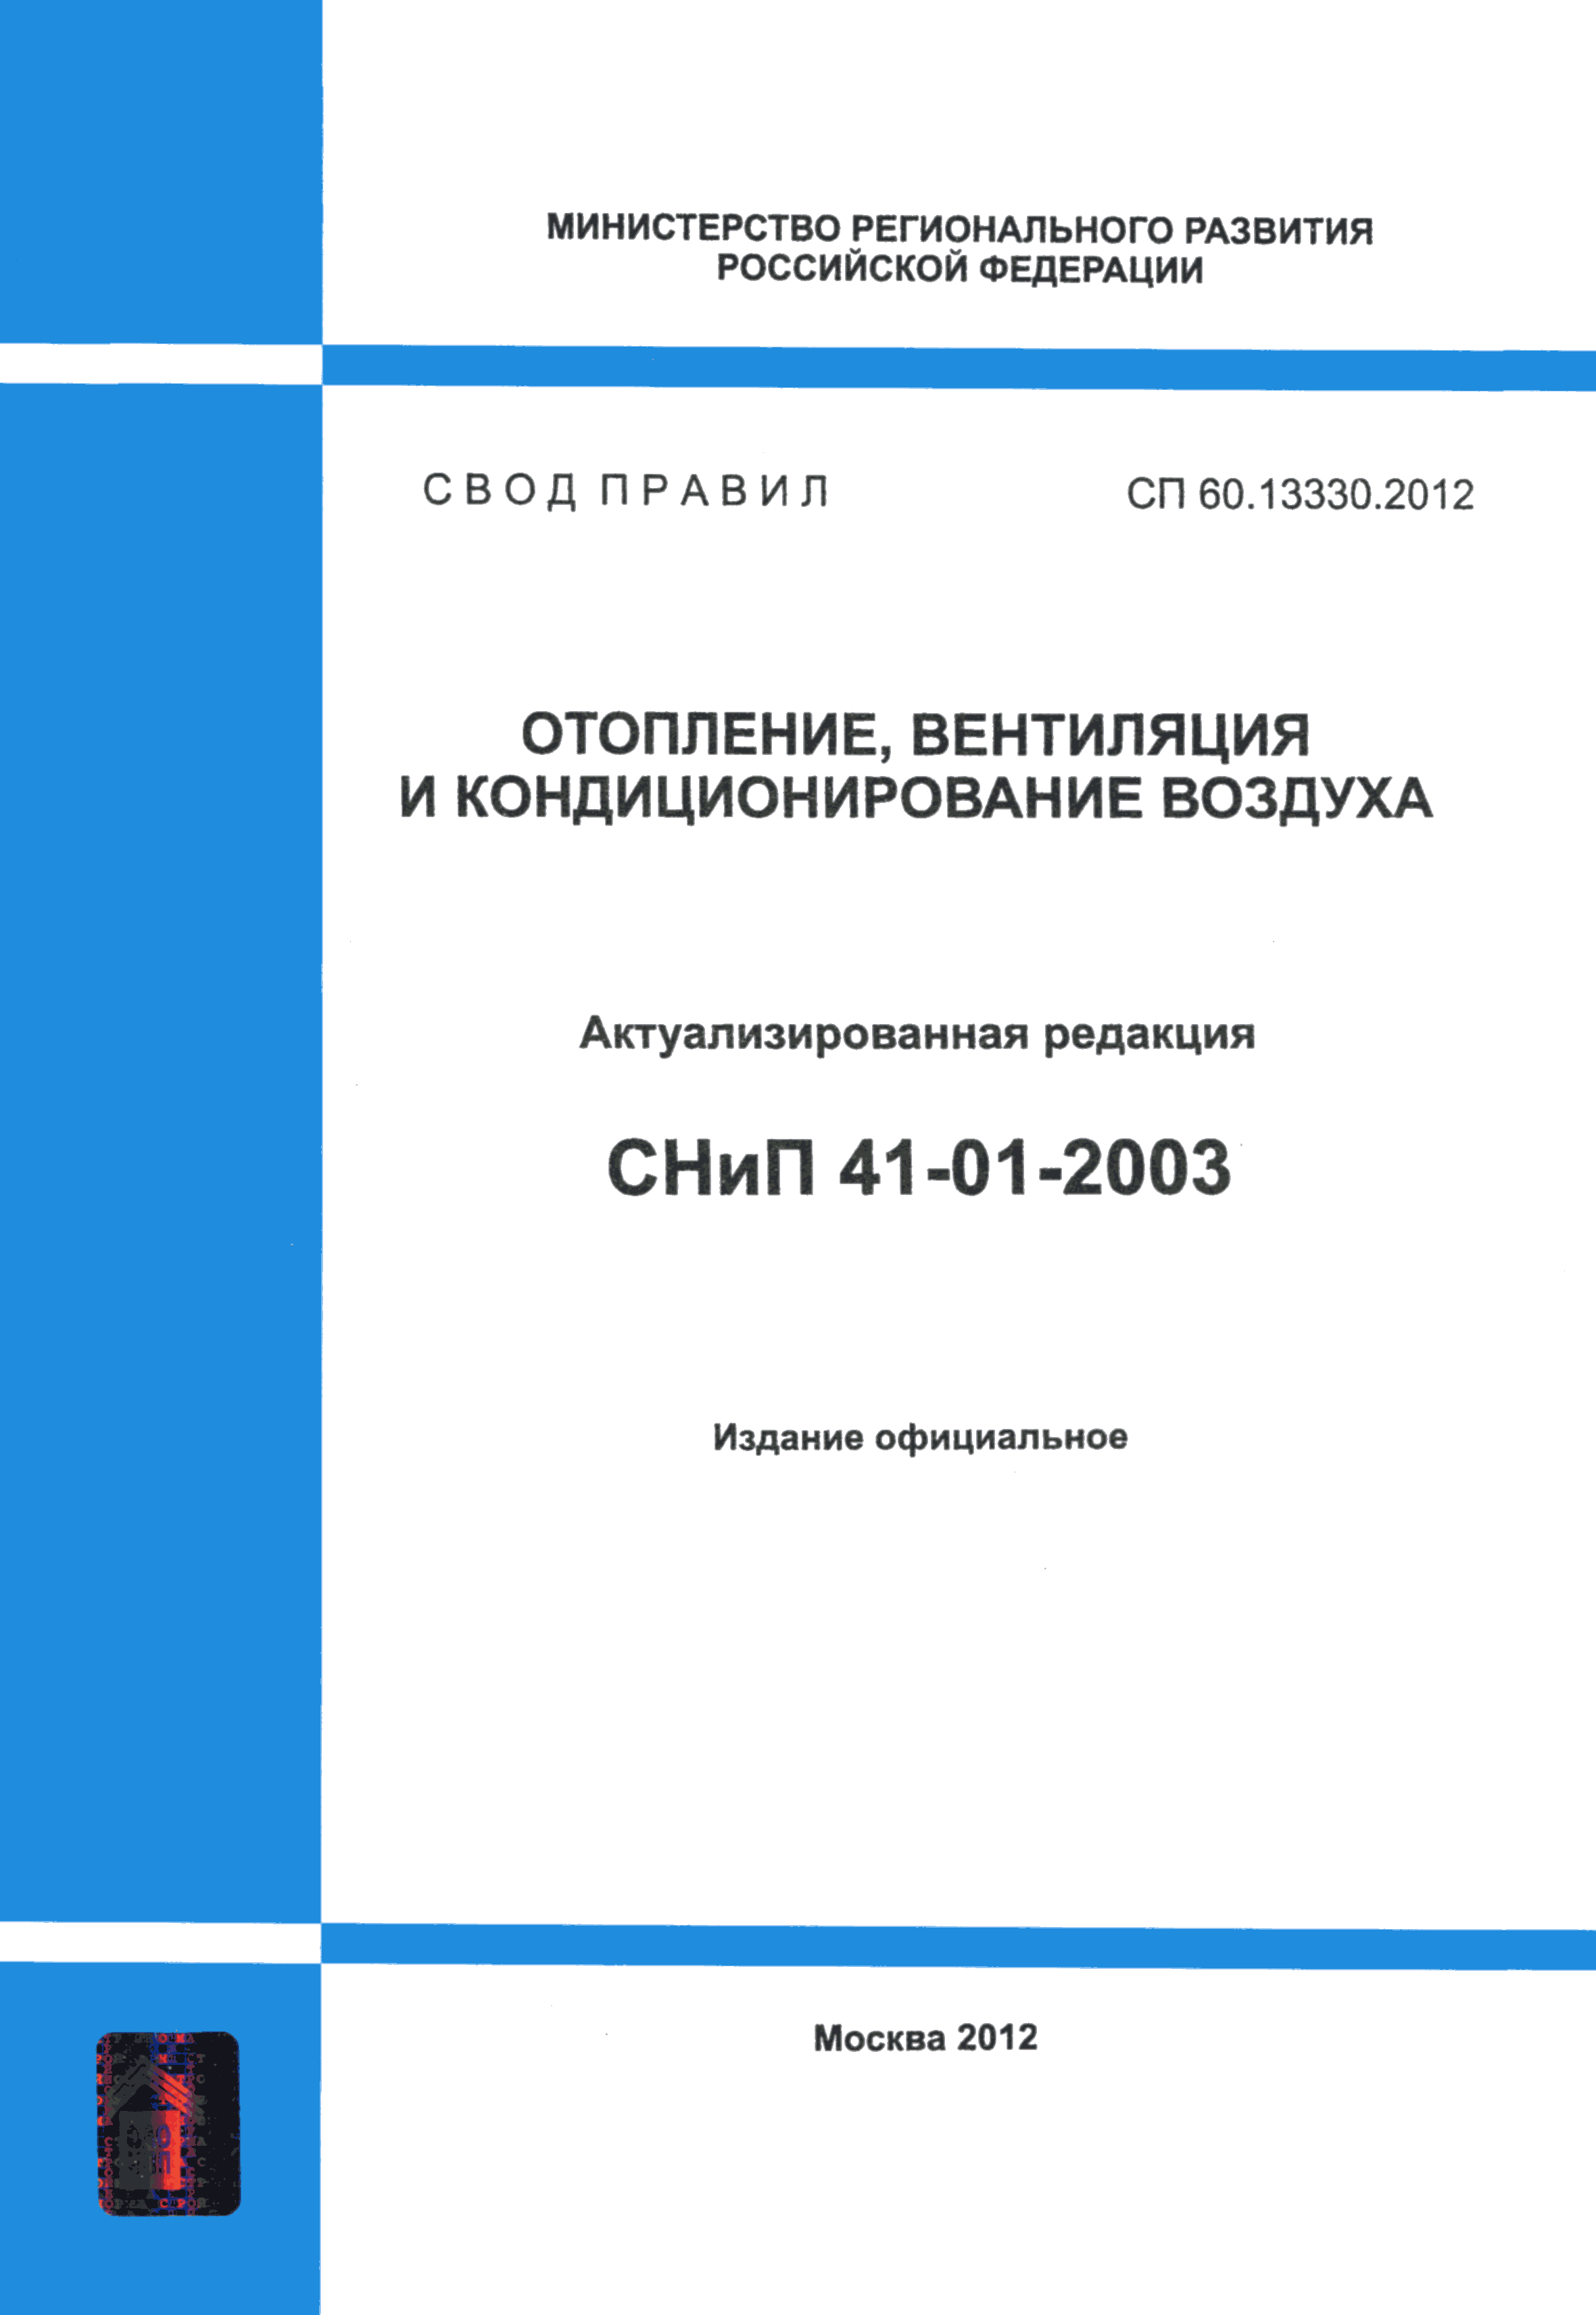 СП 60.13330.2012